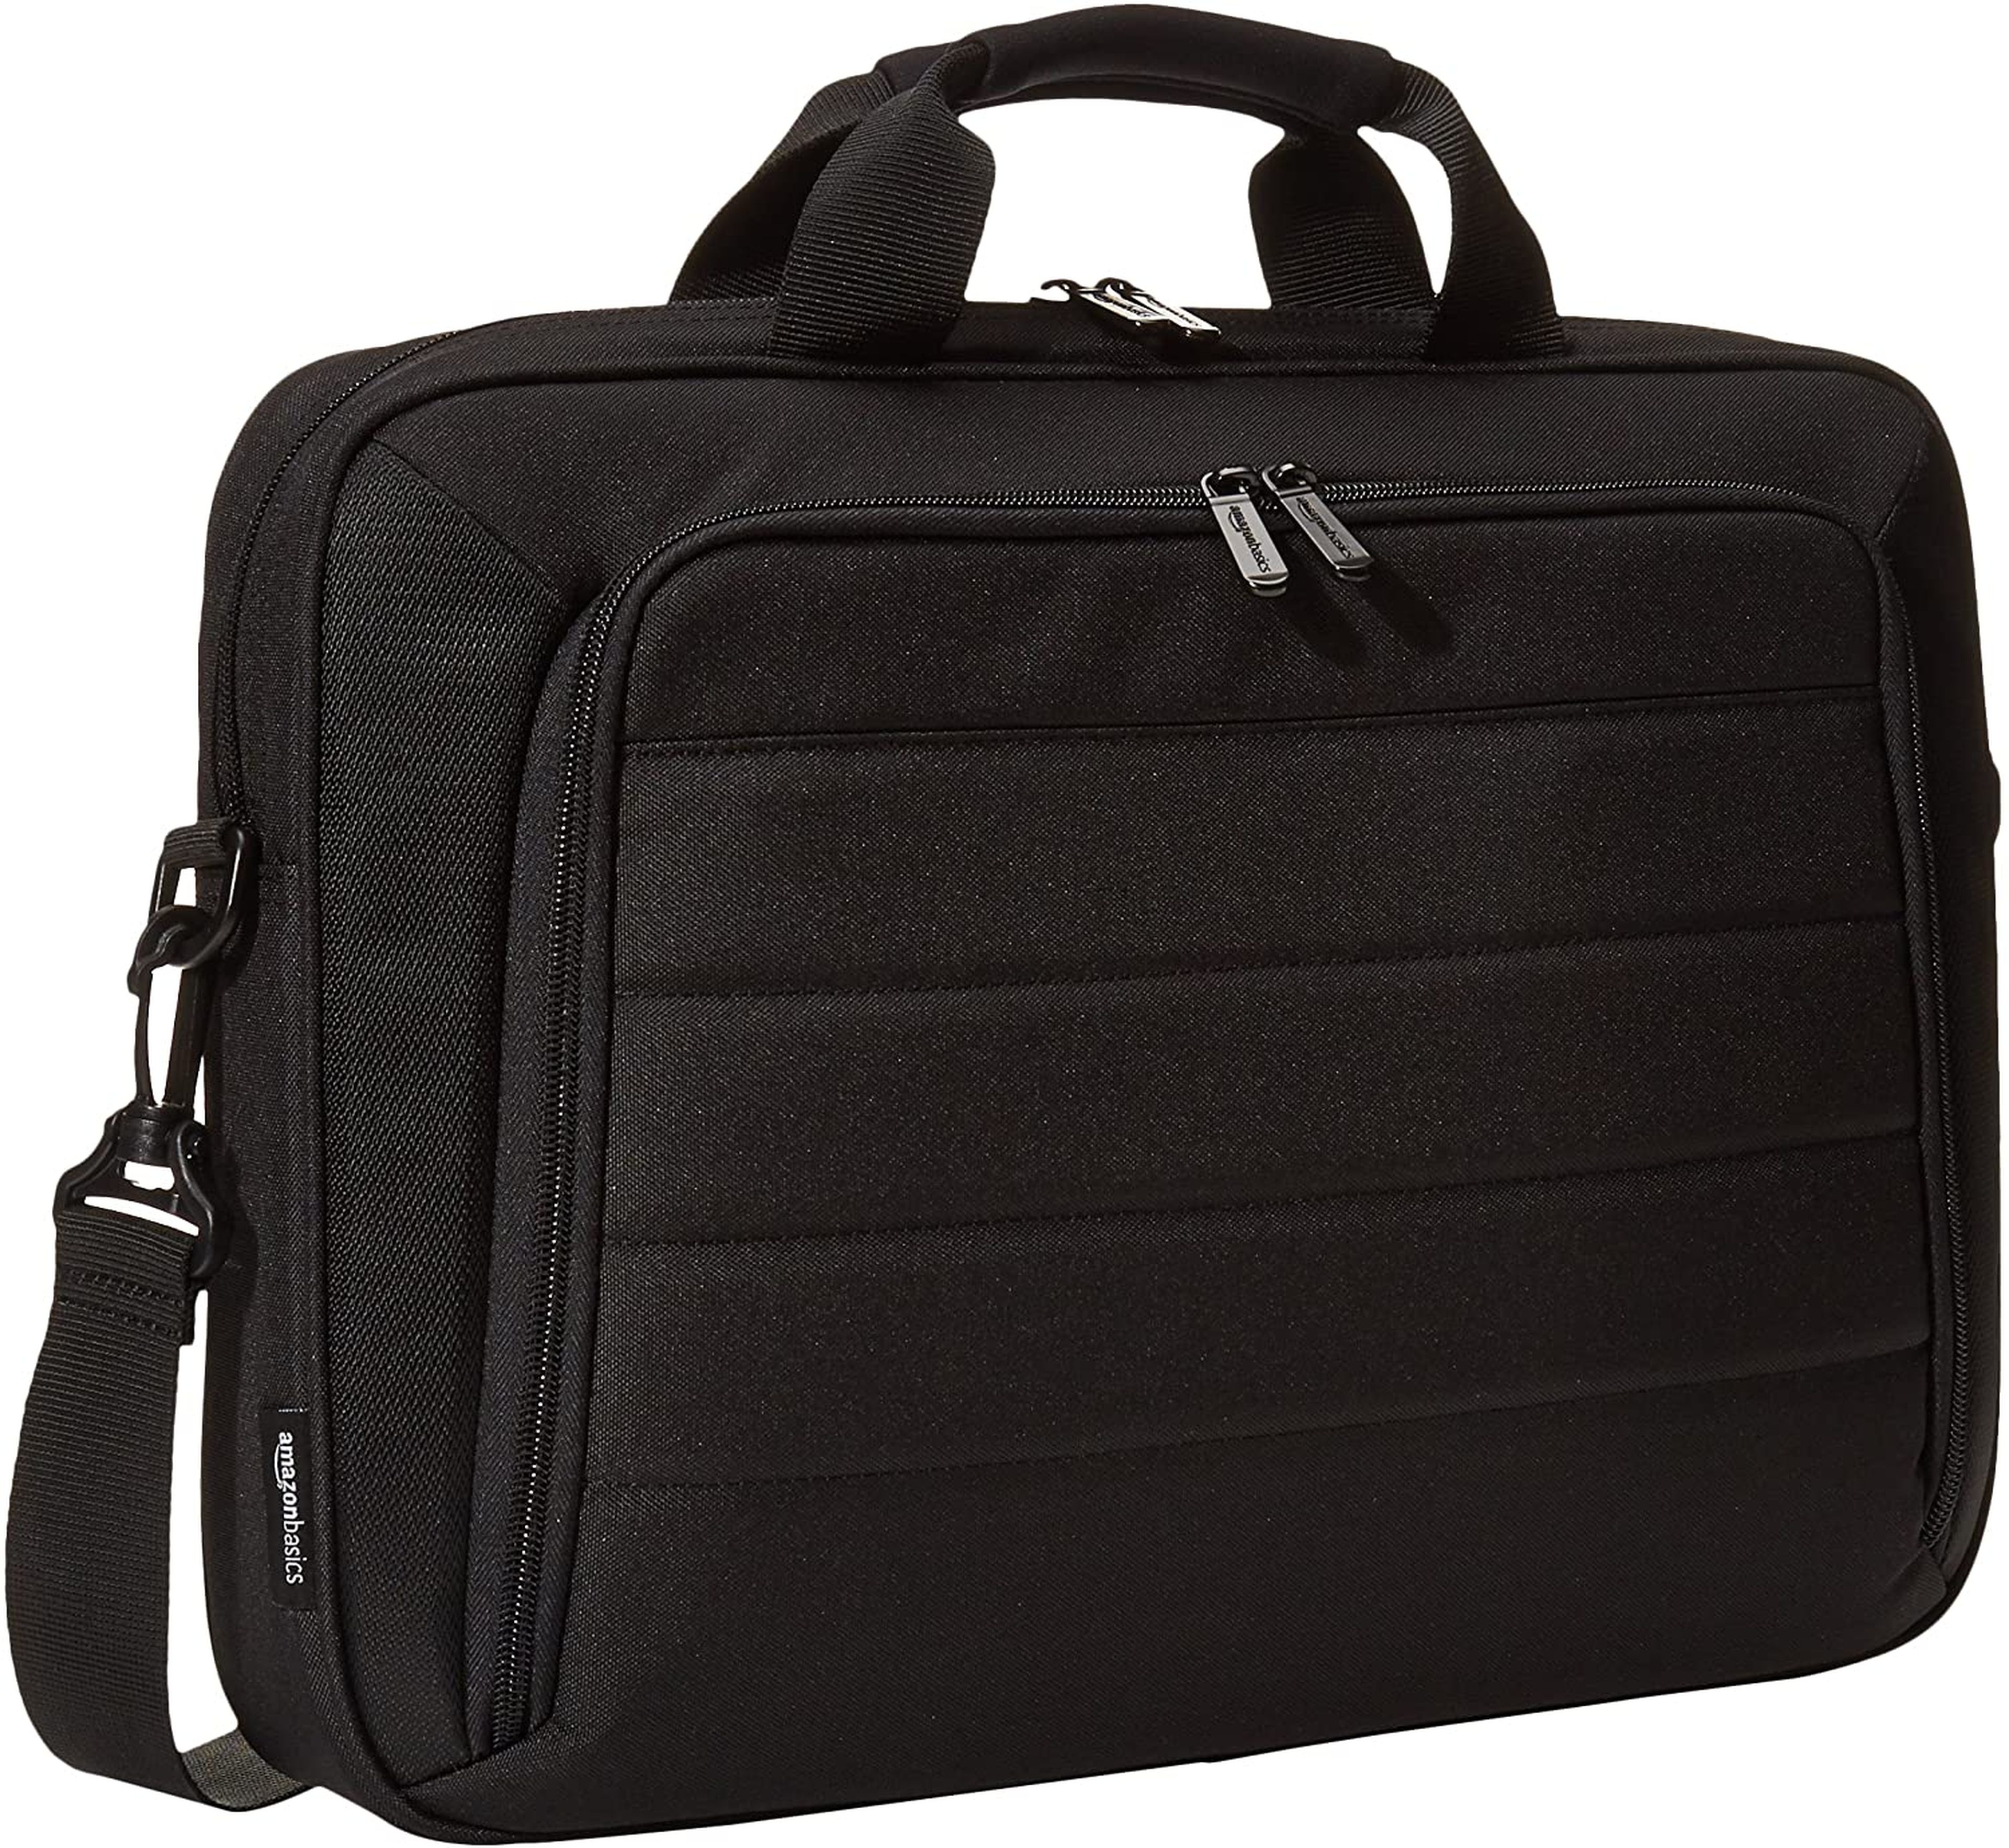 Mejores maletines para portátiles que comprar | Business Insider